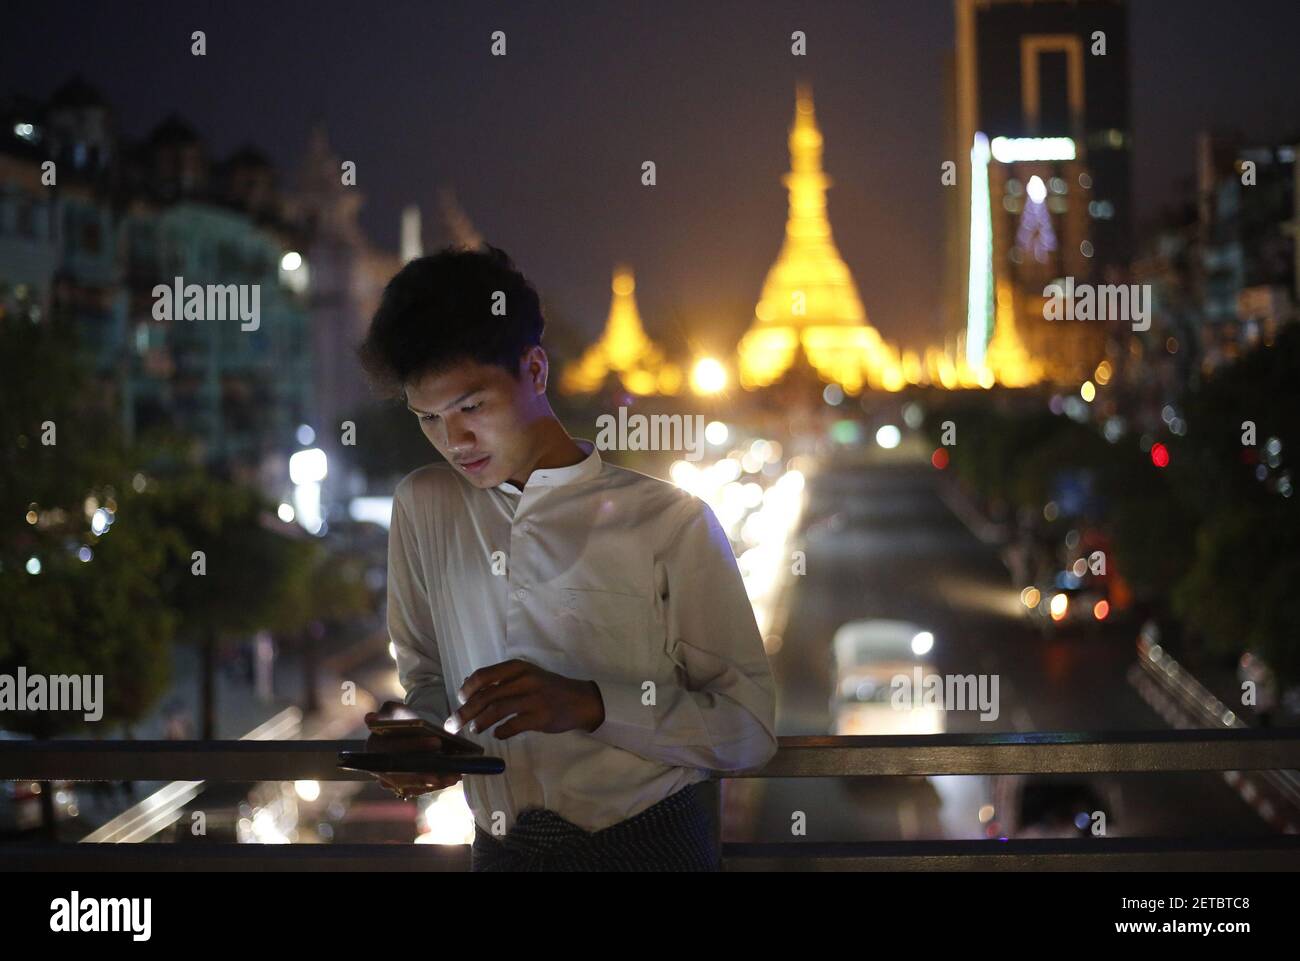 (170113) -- YANGON, 13. Januar 2017 (Xinhua) -- EIN Mann spielt das Handy in Yangon, Myanmar, 13. Januar 2017. Das Ministerium für Verkehr und Kommunikation in Myanmar hat am Donnerstag den vierten Telekommunikationsbetreiber, der im Land tätig ist, bewilligt. Myanmar National Tele & Communications Co. Ltd, ein Joint Venture zwischen lokalen Unternehmen und Viettel, dem Verteidigungsministerium Viettel, wird der vierte Betreiber mit einer 15-Jahres-Lizenz. Der Betreiber muss der Regierung 300 Millionen US-Dollar als Lizenzgebühren und Netzgebühren bezahlen. (Xinhua/U Aung) ****autorisiert von ytfs**** (Foto von Xin Stockfoto